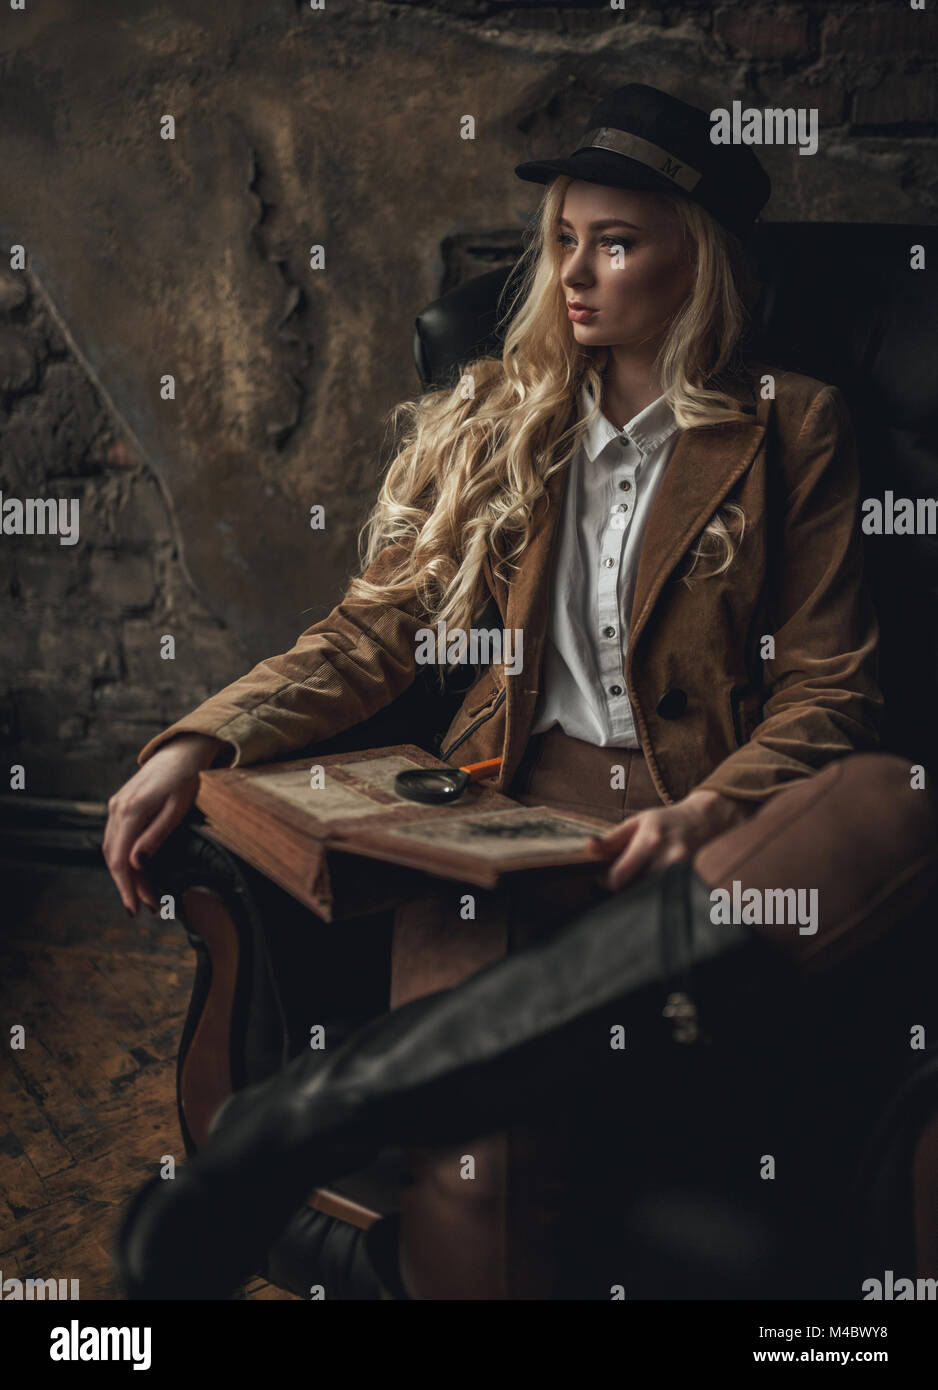 Jeune femme pensive à l'image de Sherlock Holmes est assis dans un fauteuil et est titulaire d'ancien photoalbum dans ses mains avec loupe sur fond de murs en briques anciennes Banque D'Images